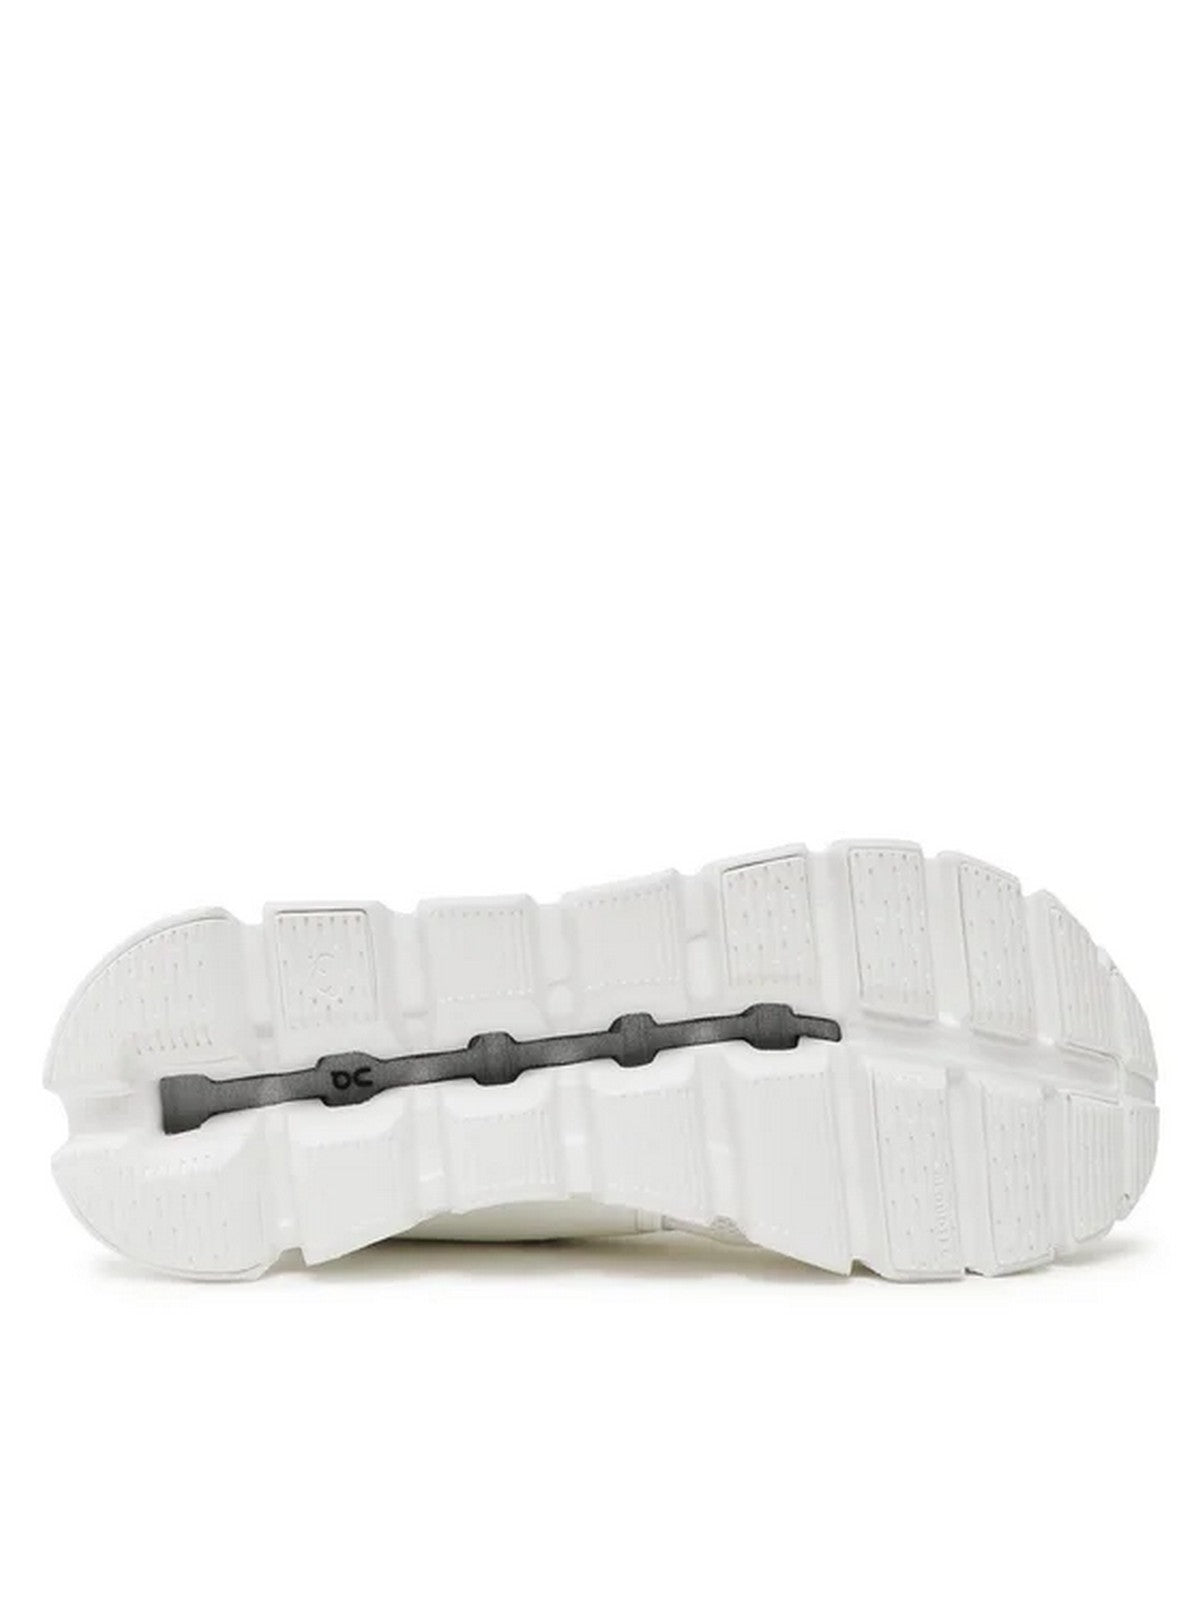 ON Hommes Sneaker Cloud 5 59.98376 Blanc